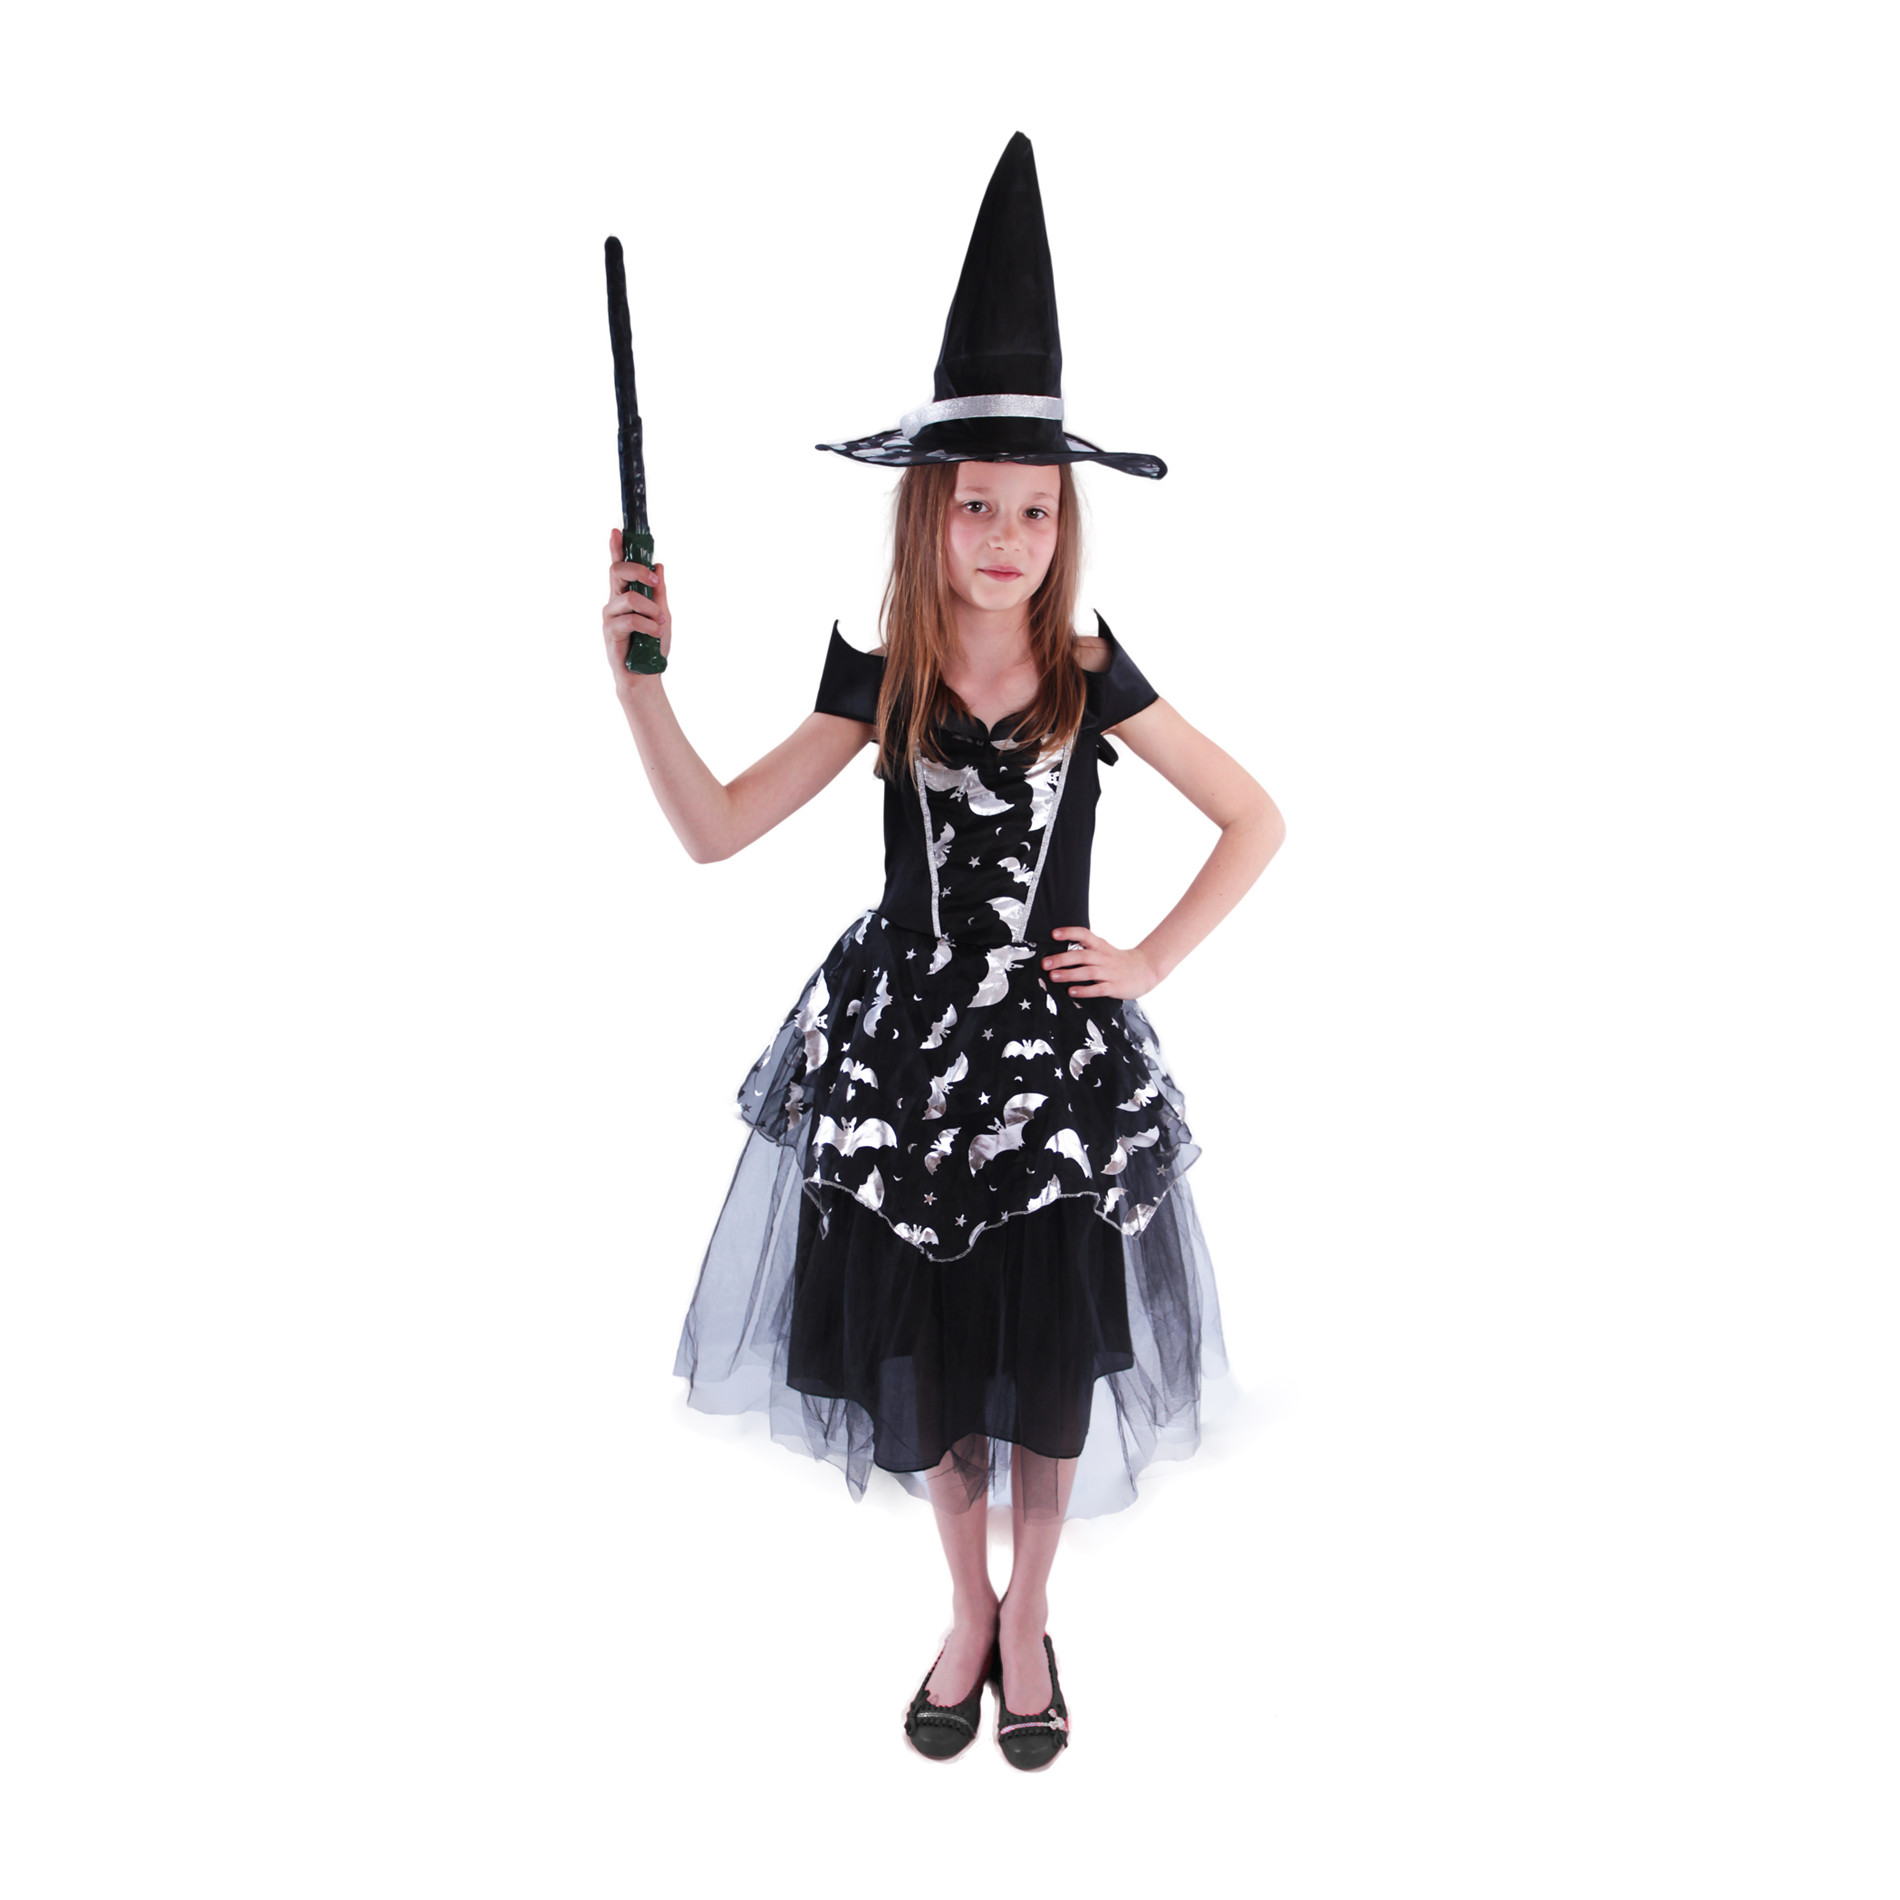 Children costume - bat witch (S)